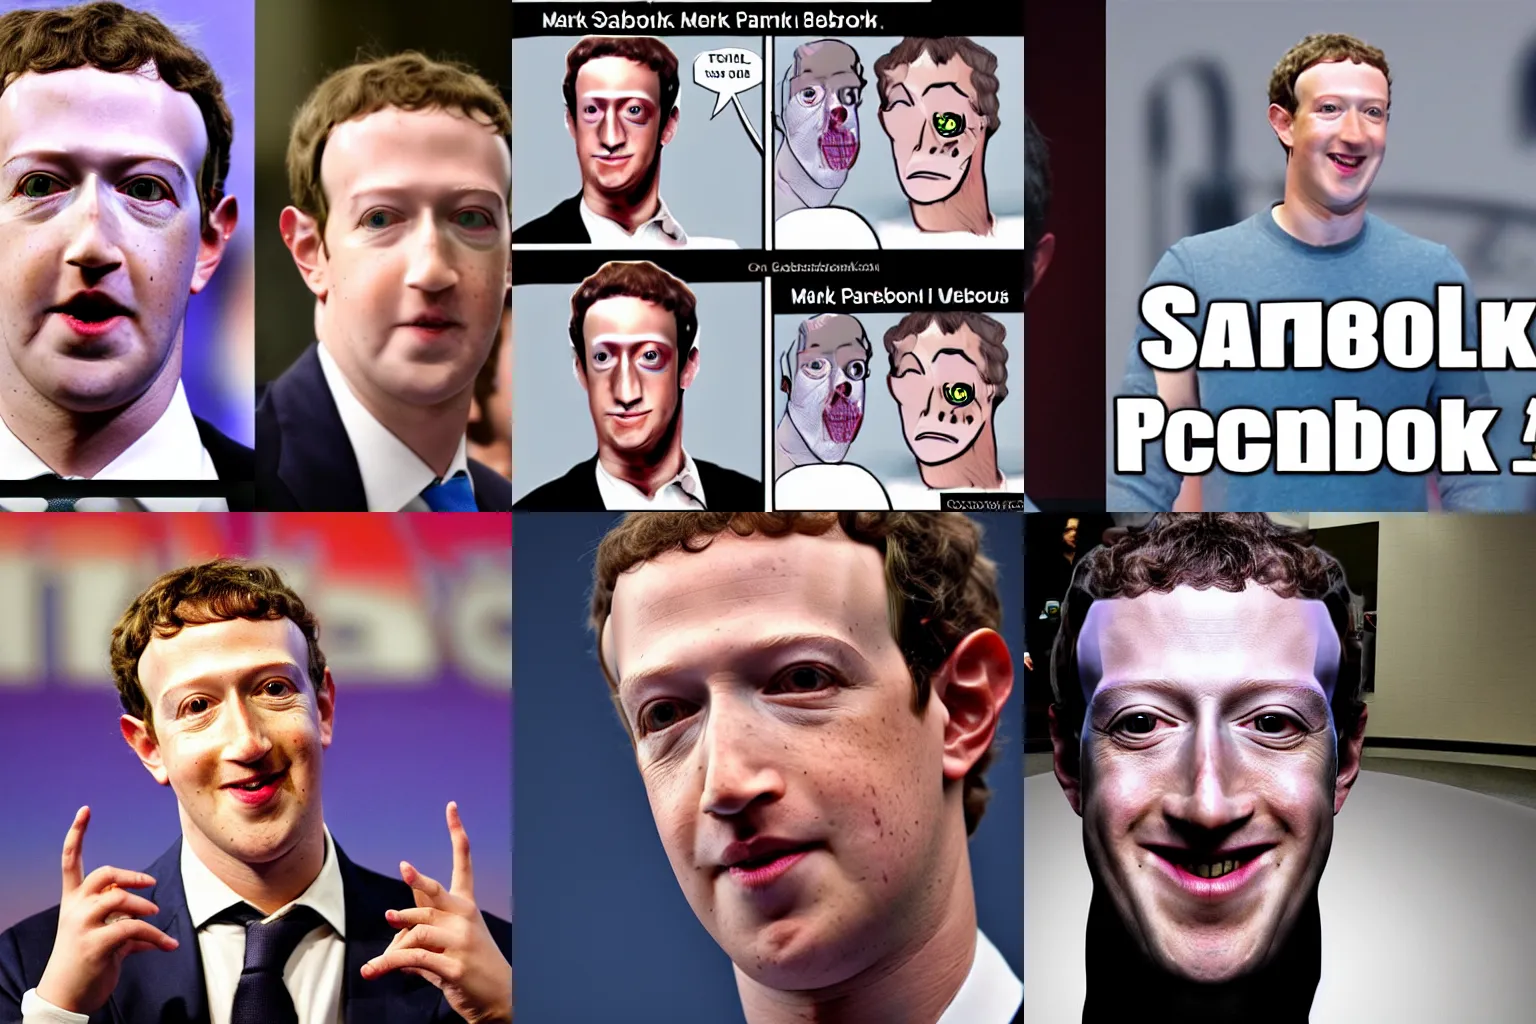 Prompt: Scary Mark Zuckerberg villain